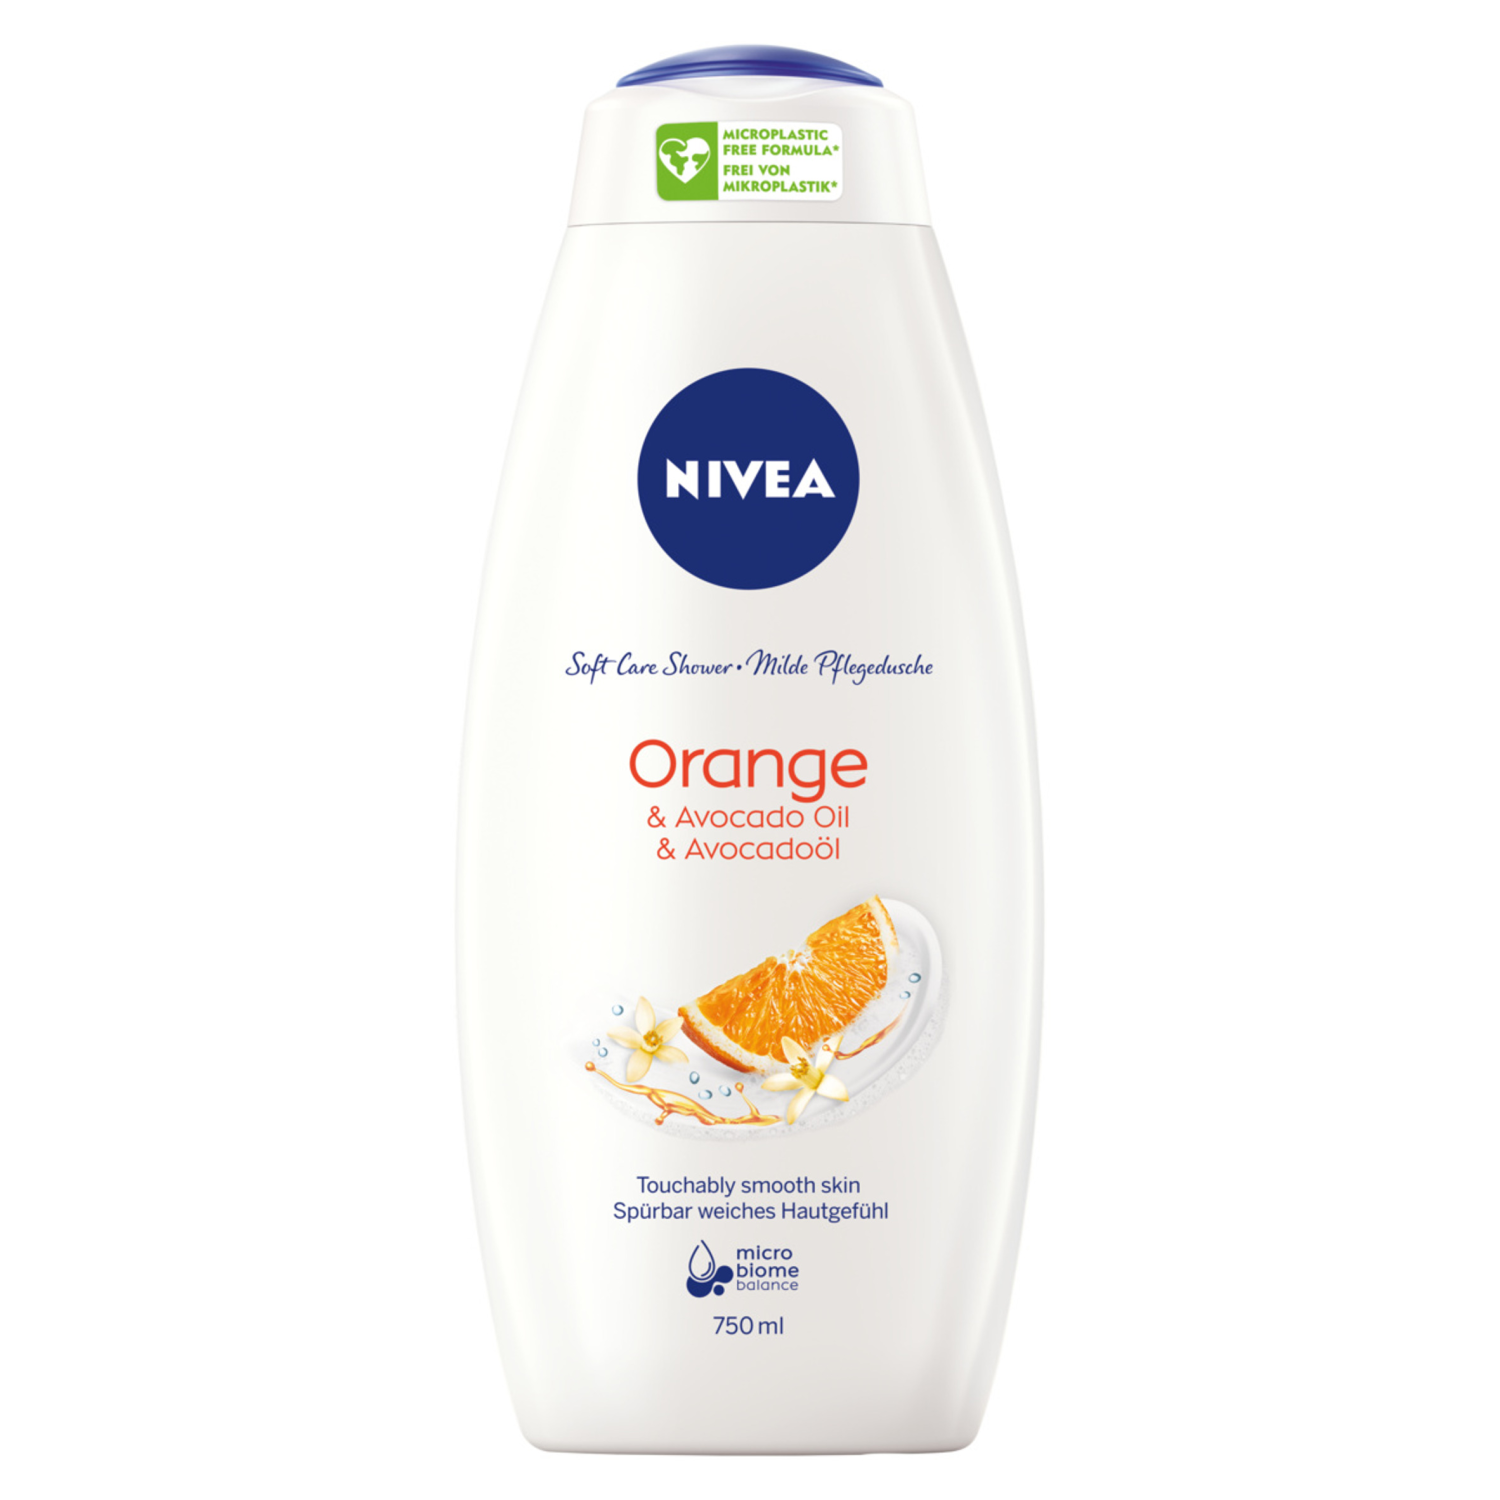 Nivea Orange & Avocado Oil ухаживающий гель для душа, 750 мл